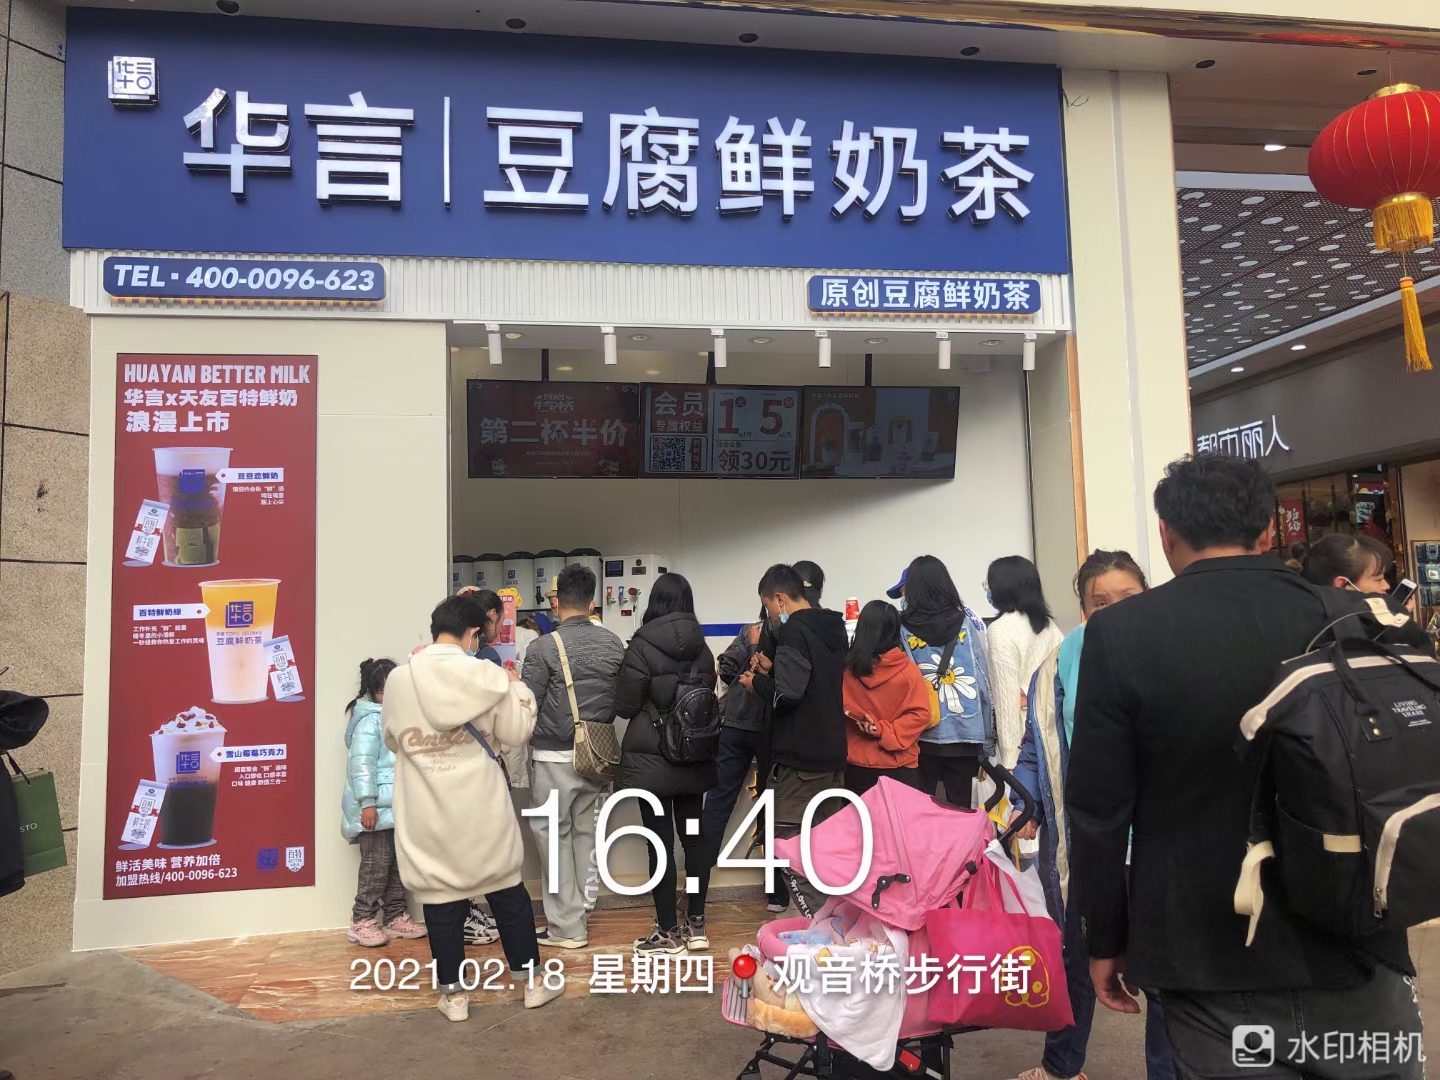 渝中区满溢食品店 环境照片活动图片